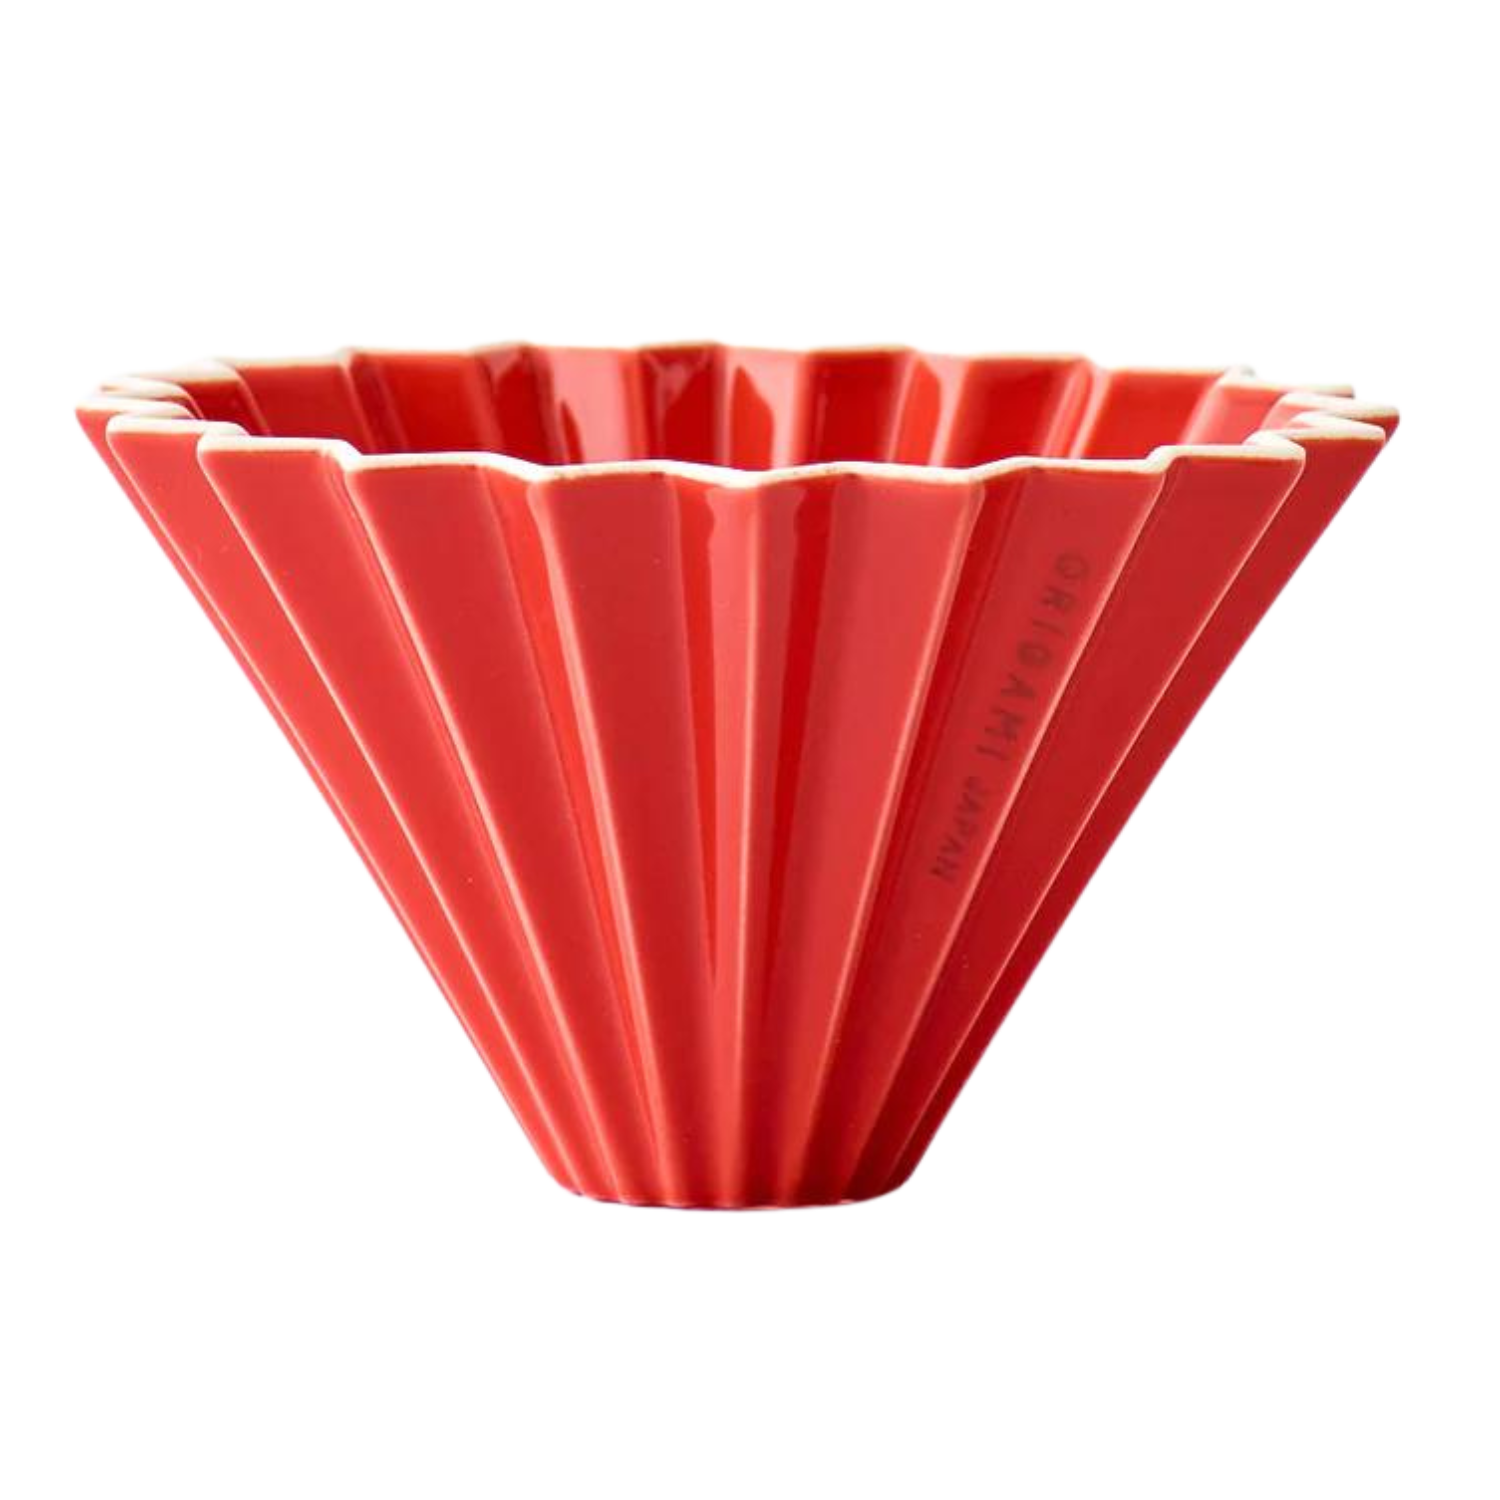 ceramic origami filter coffee dripper red